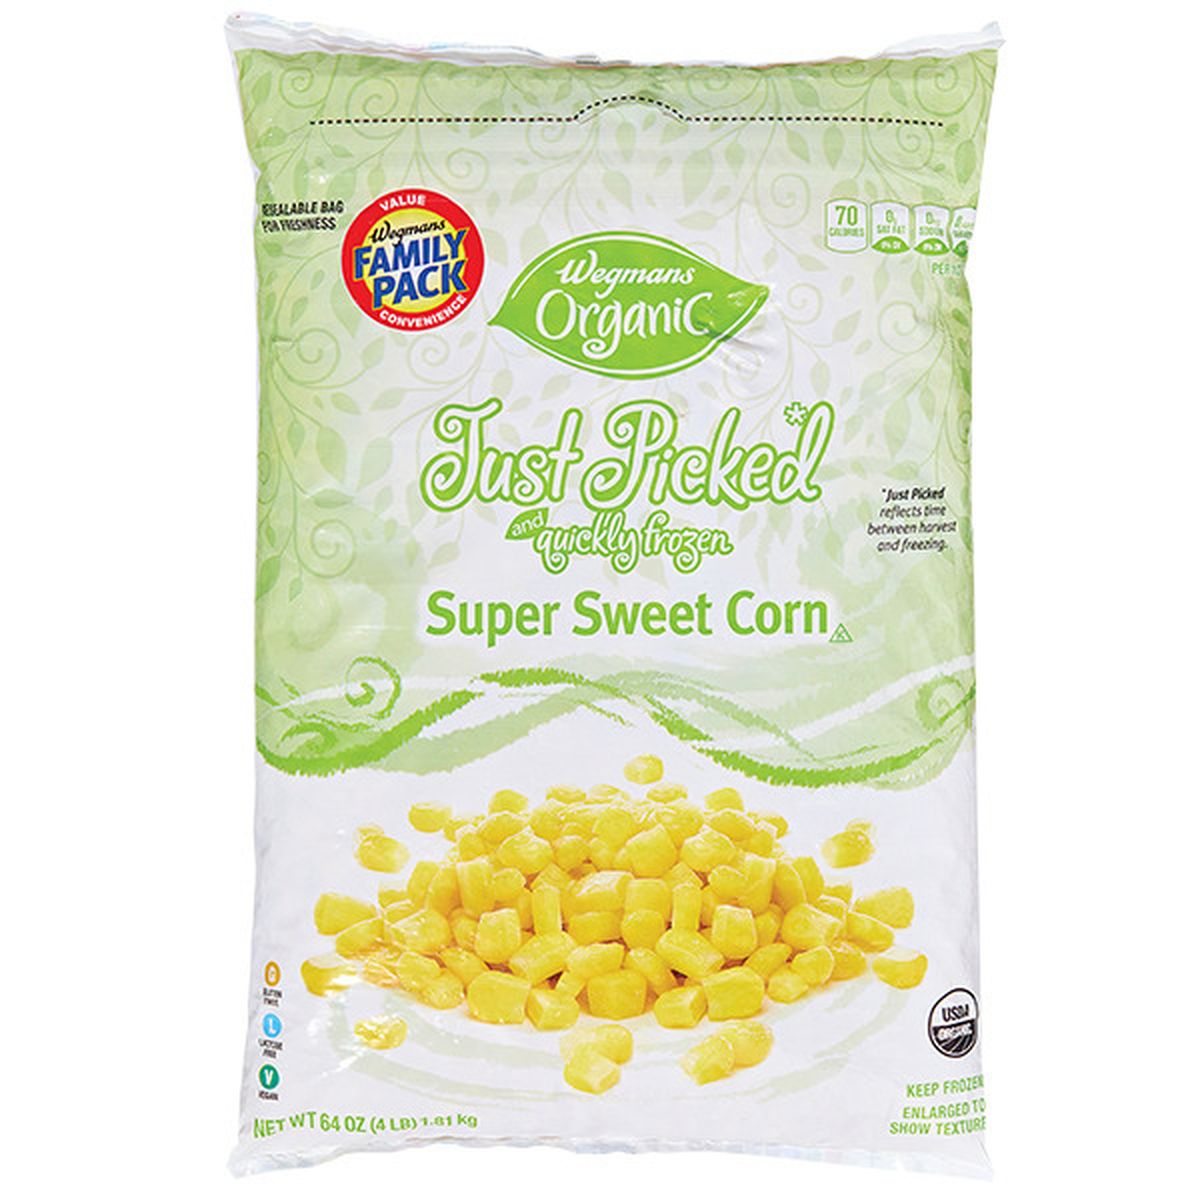 Calories in Wegmans Organic Frozen Super Sweet Corn, FAMILY PACK